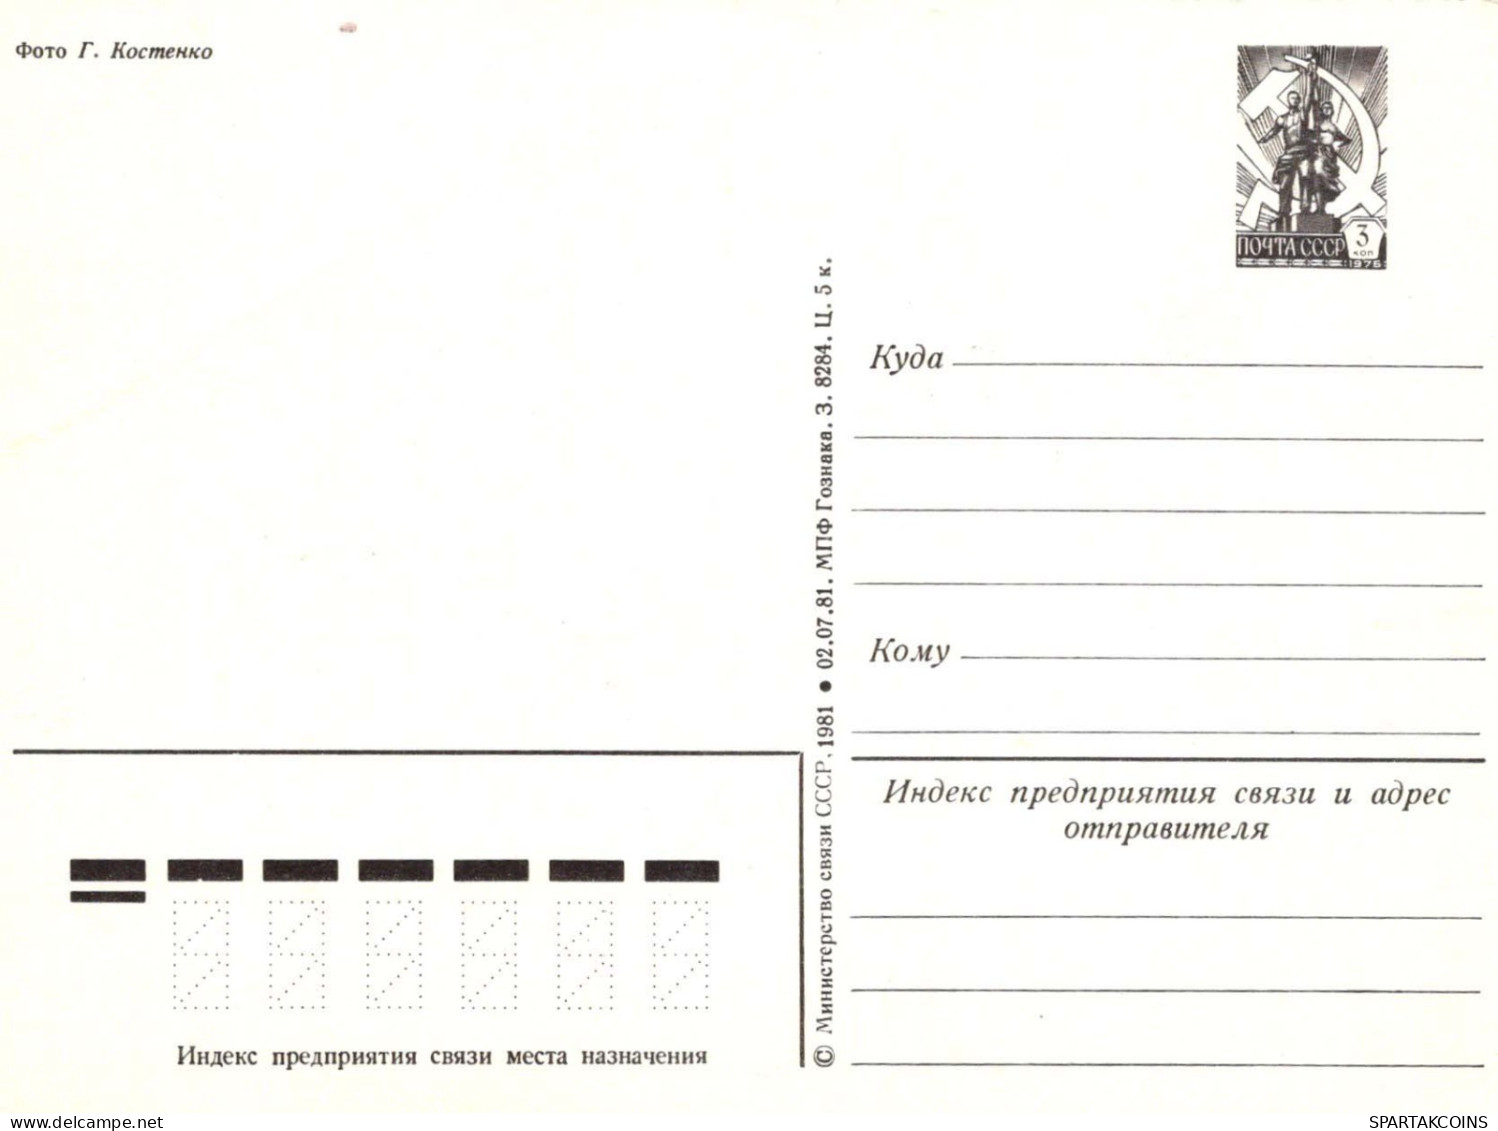 FLORES Vintage Tarjeta Postal CPSM #PBZ506.ES - Fleurs